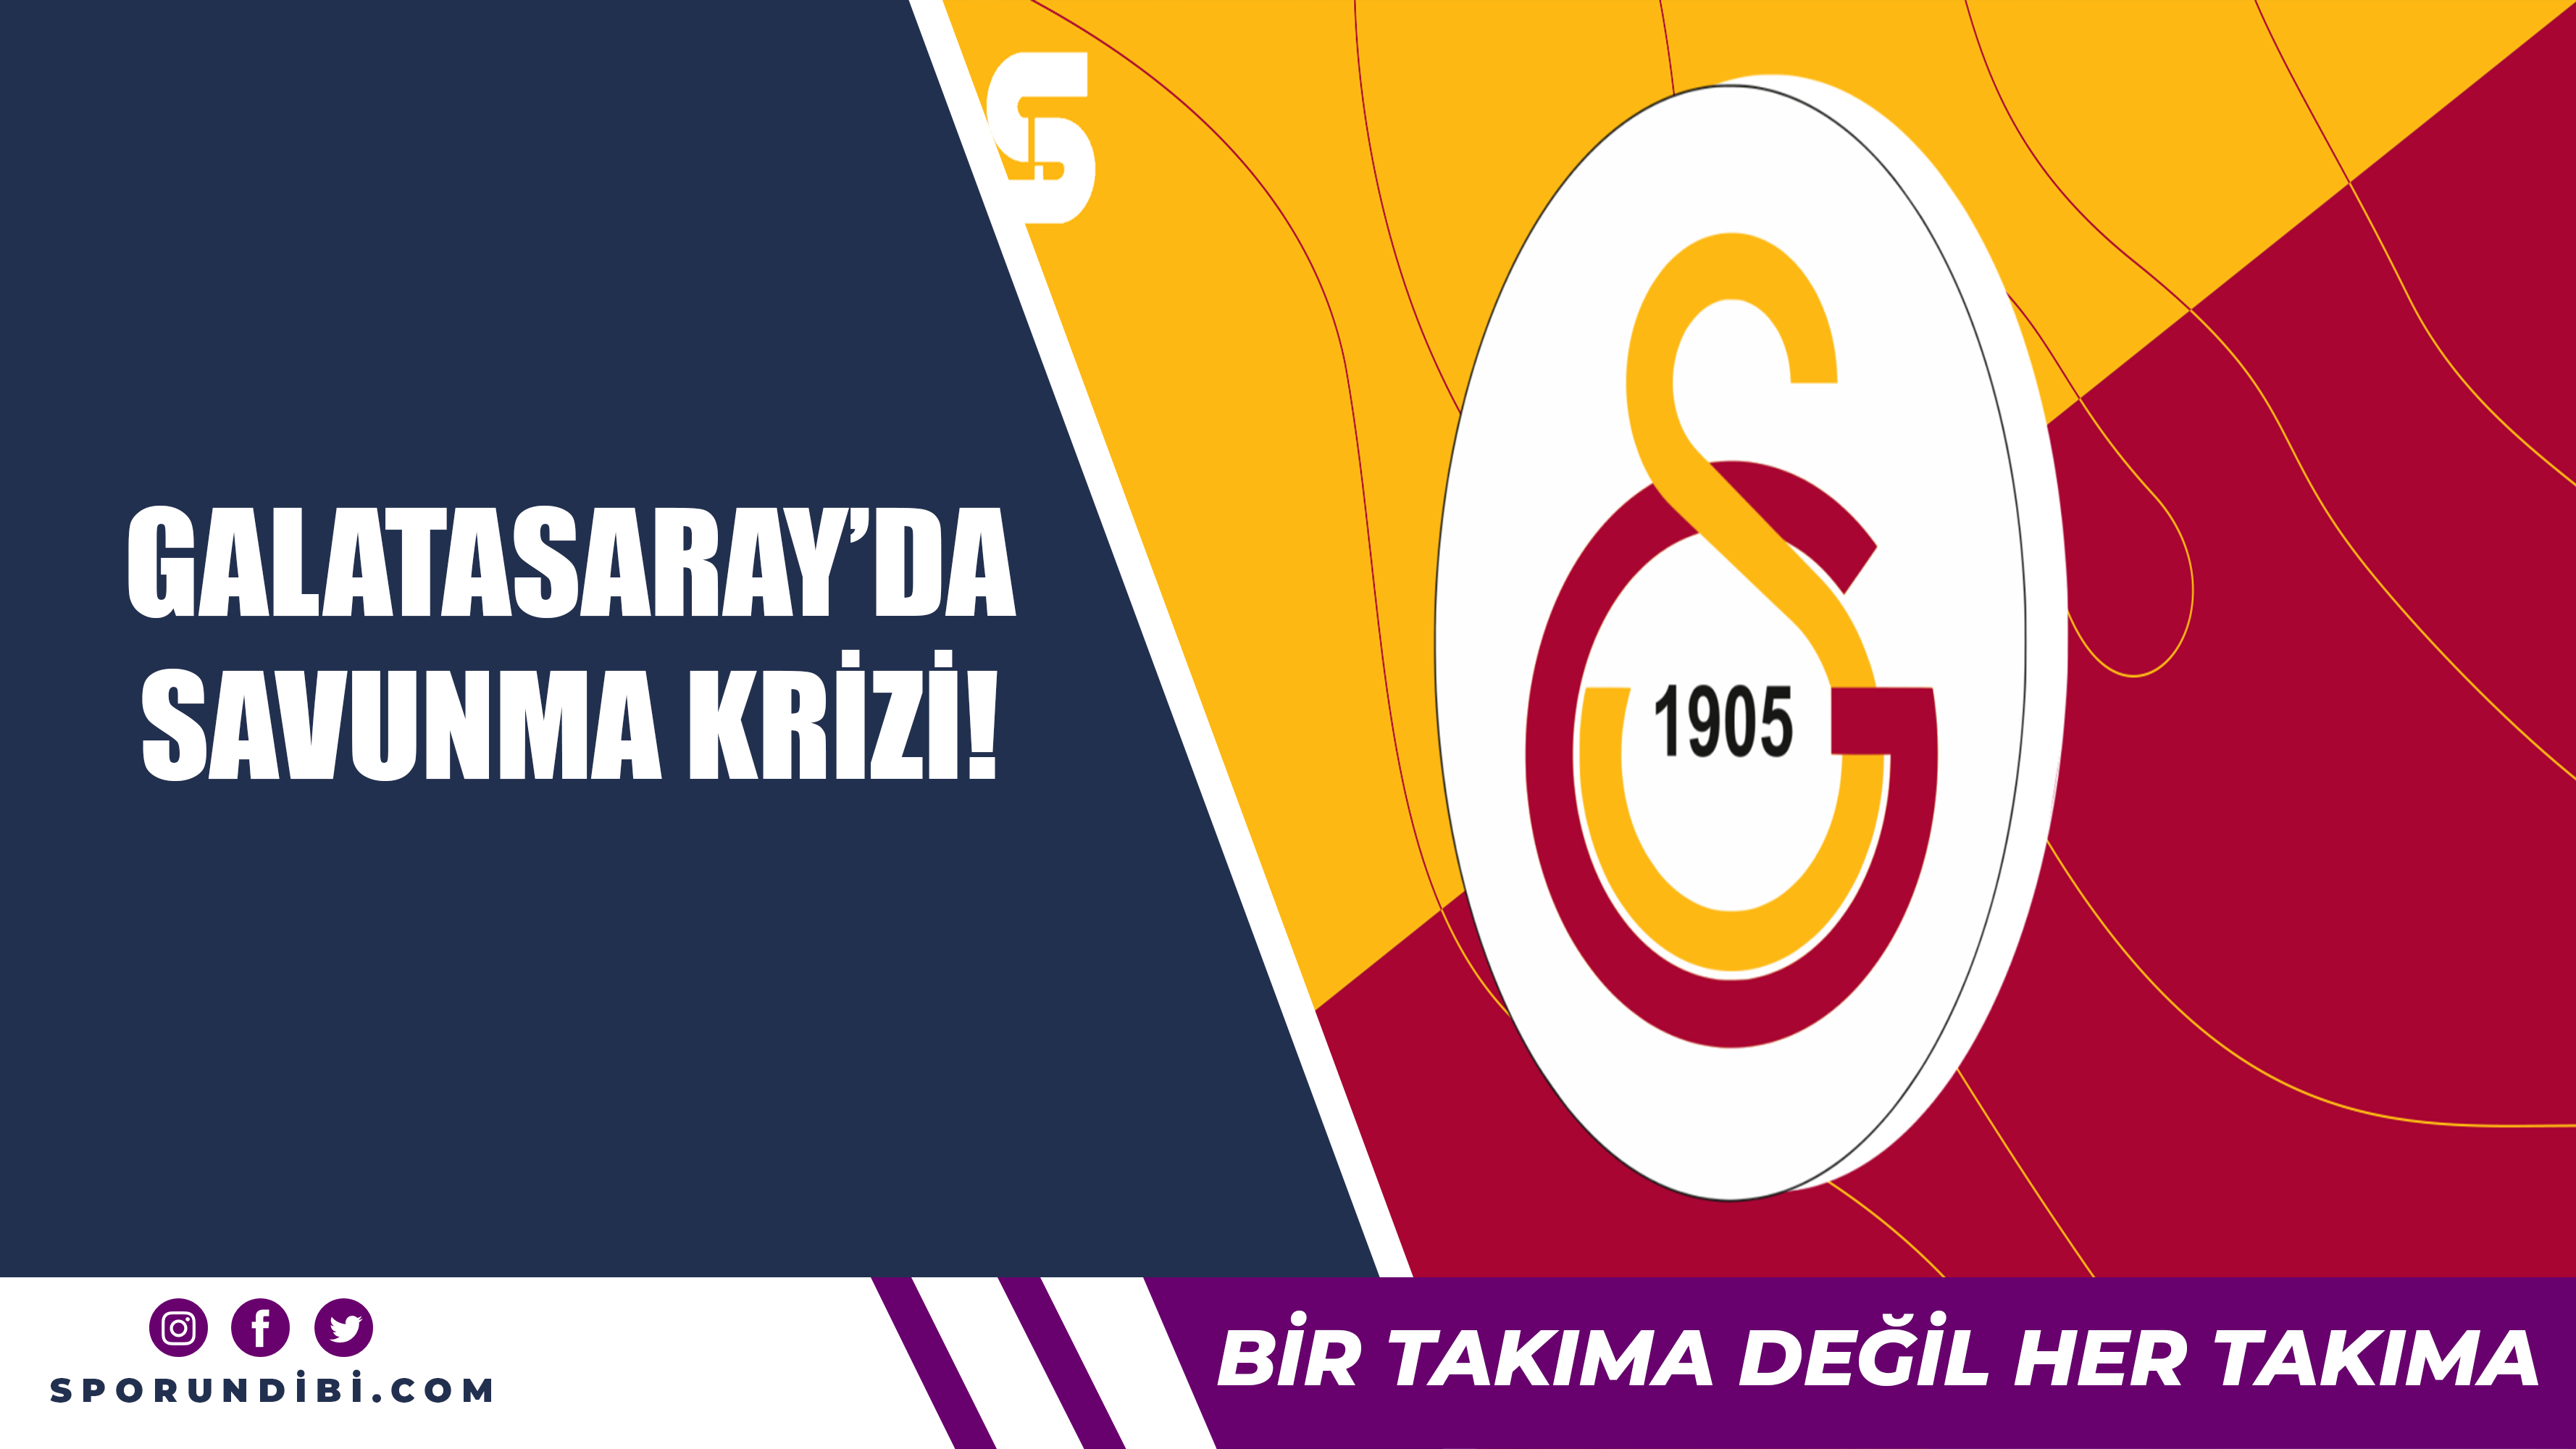 Galatasaray'da savunma krizi!